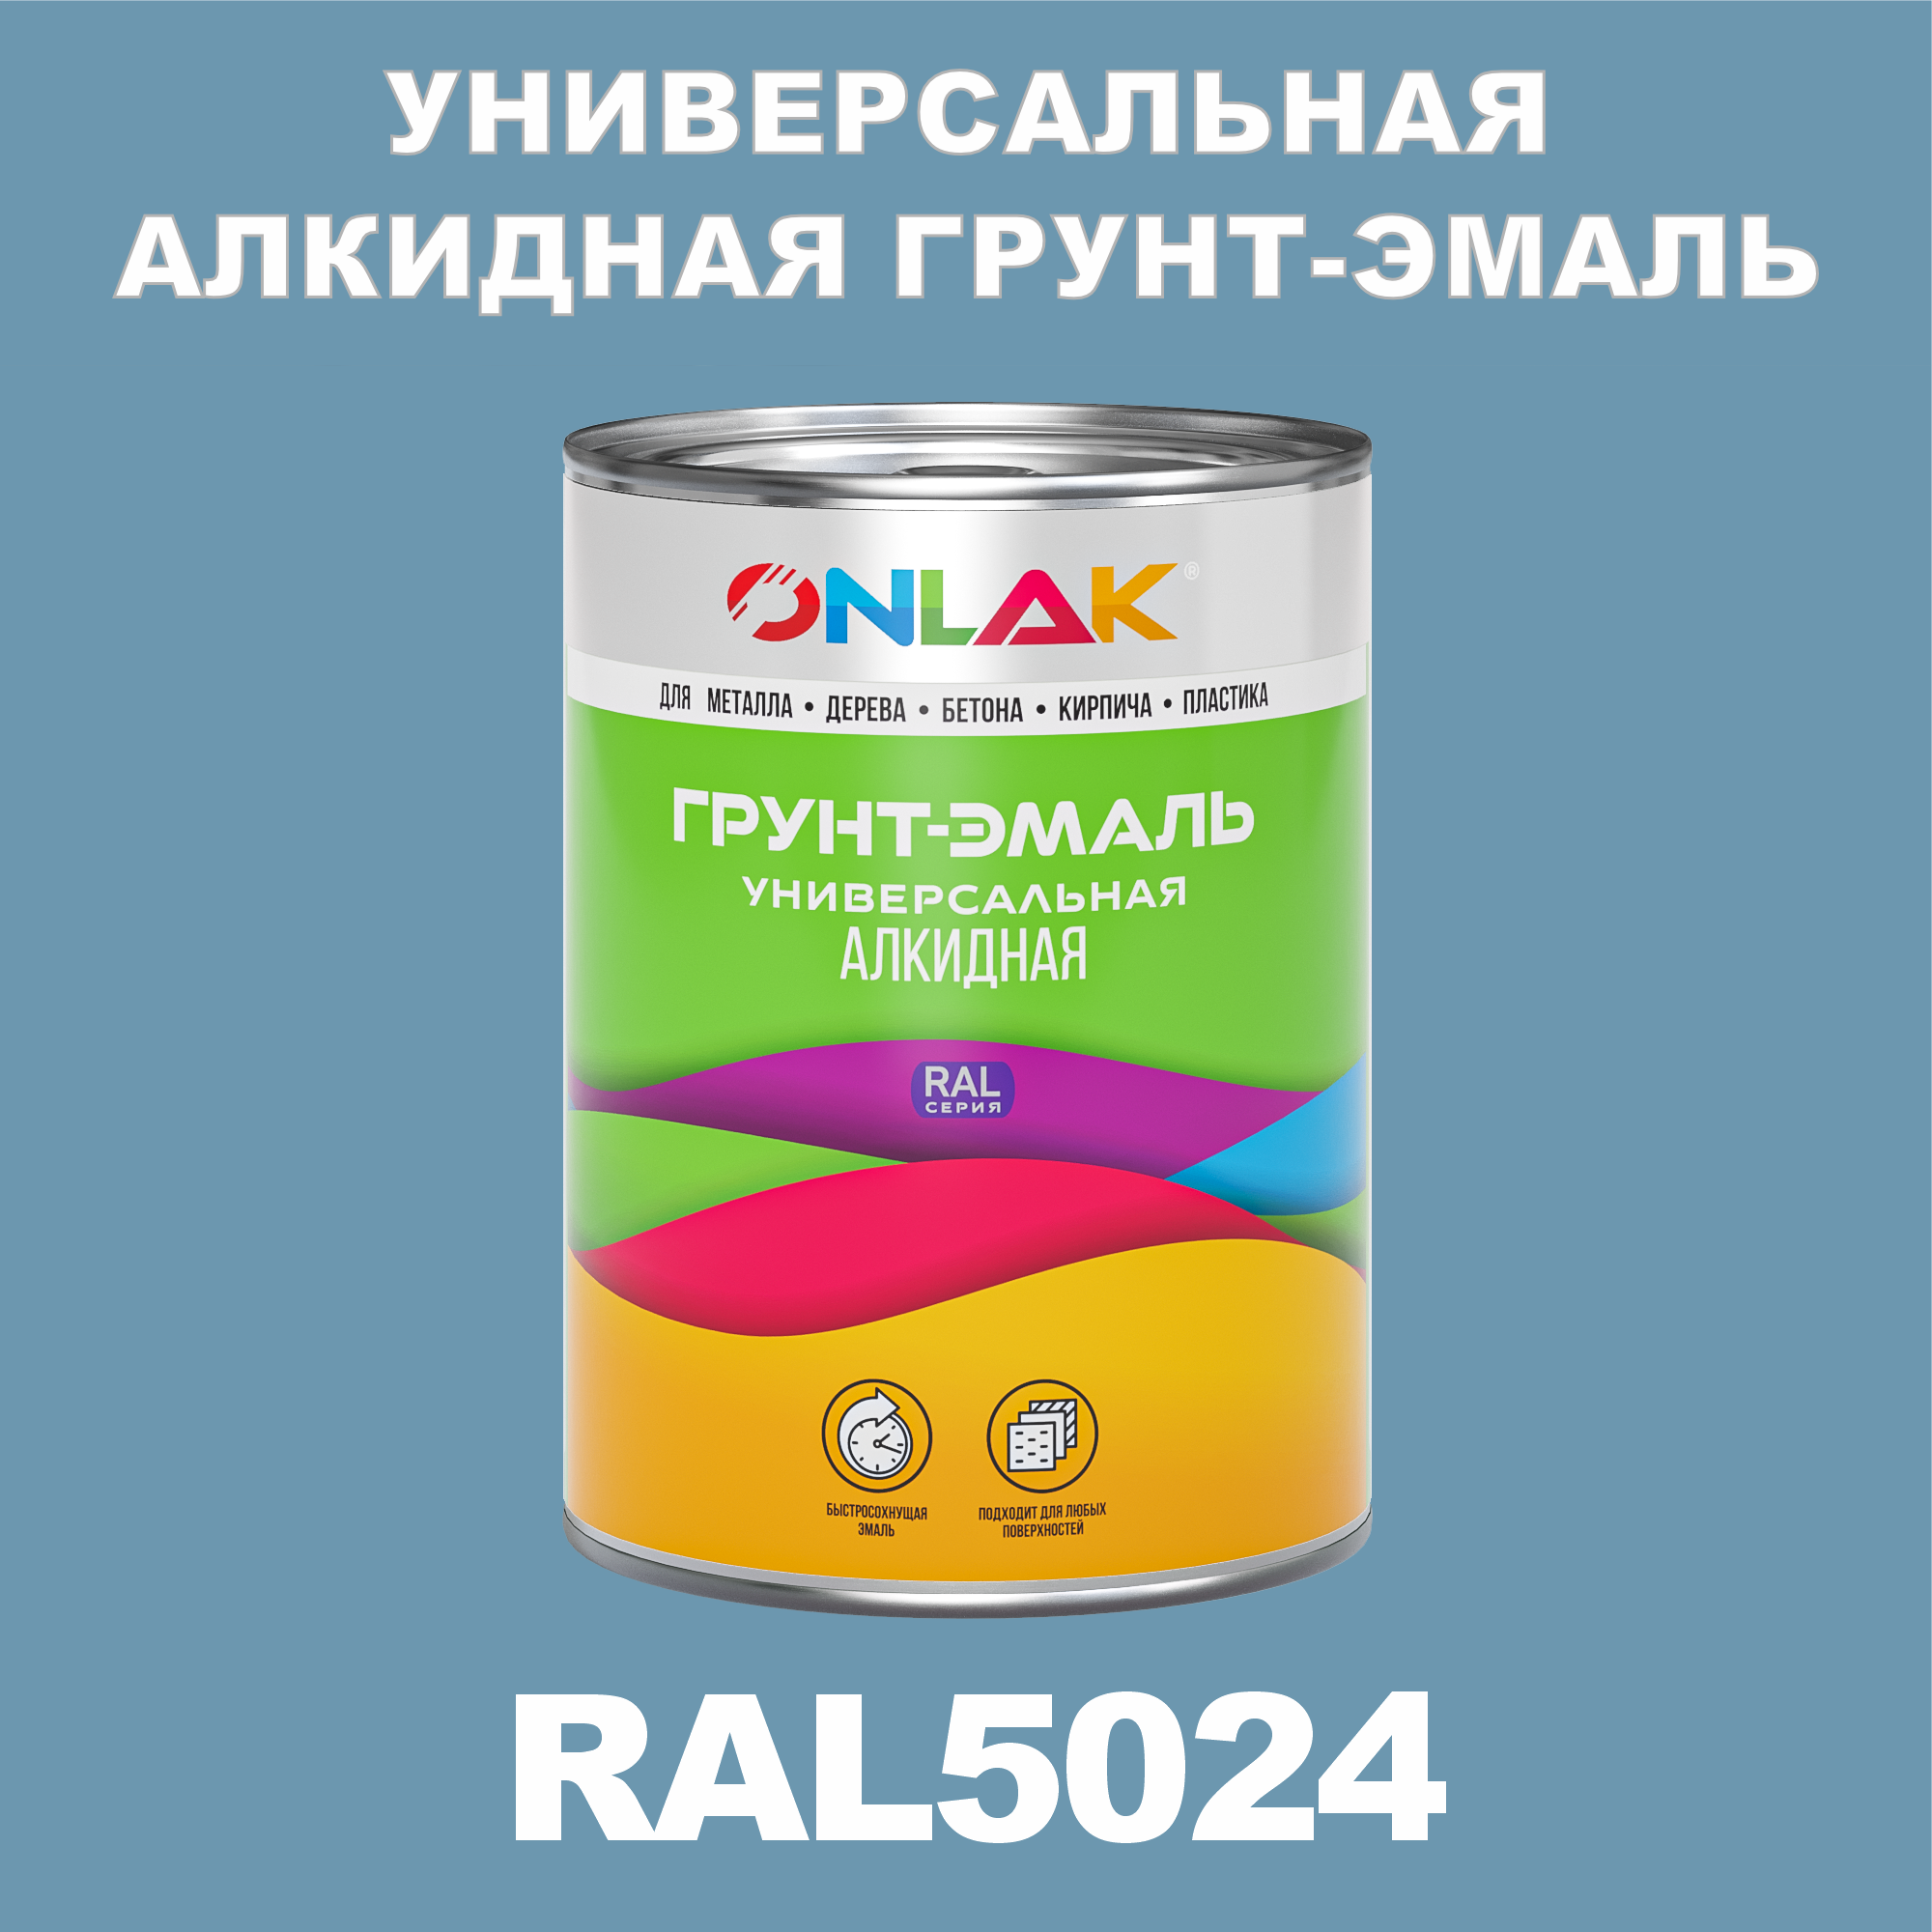 Грунт-эмаль ONLAK 1К RAL5024 антикоррозионная алкидная по металлу по ржавчине 1 кг грунт эмаль yollo по ржавчине алкидная серая 0 9 кг